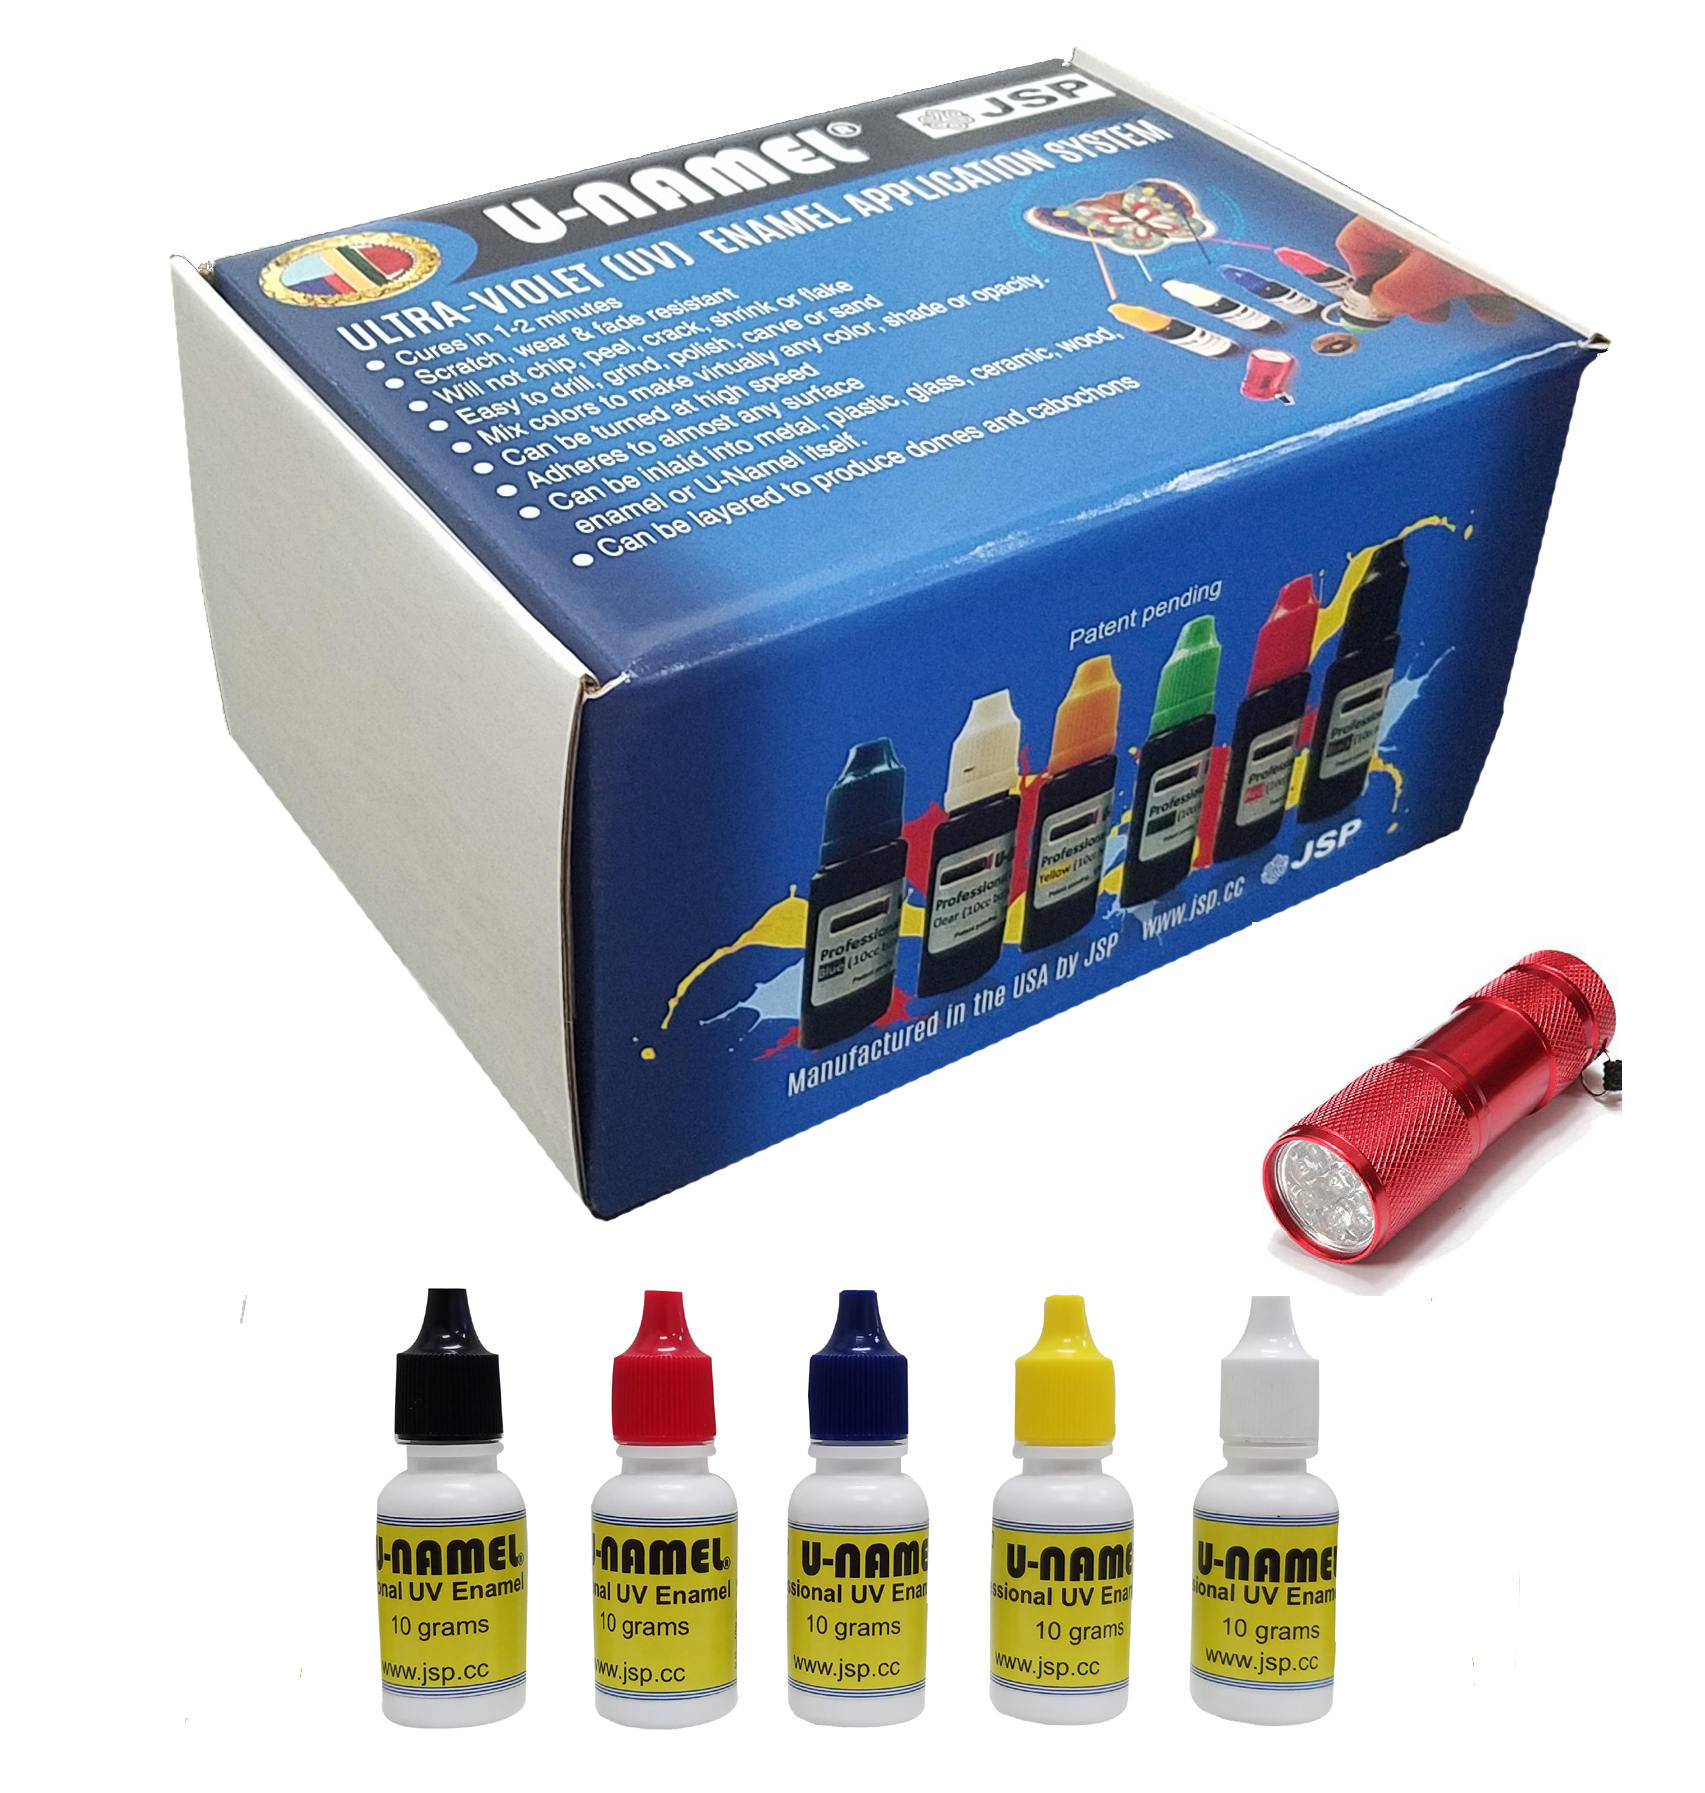 U-NAMEL® starter kit, 5 colors + led